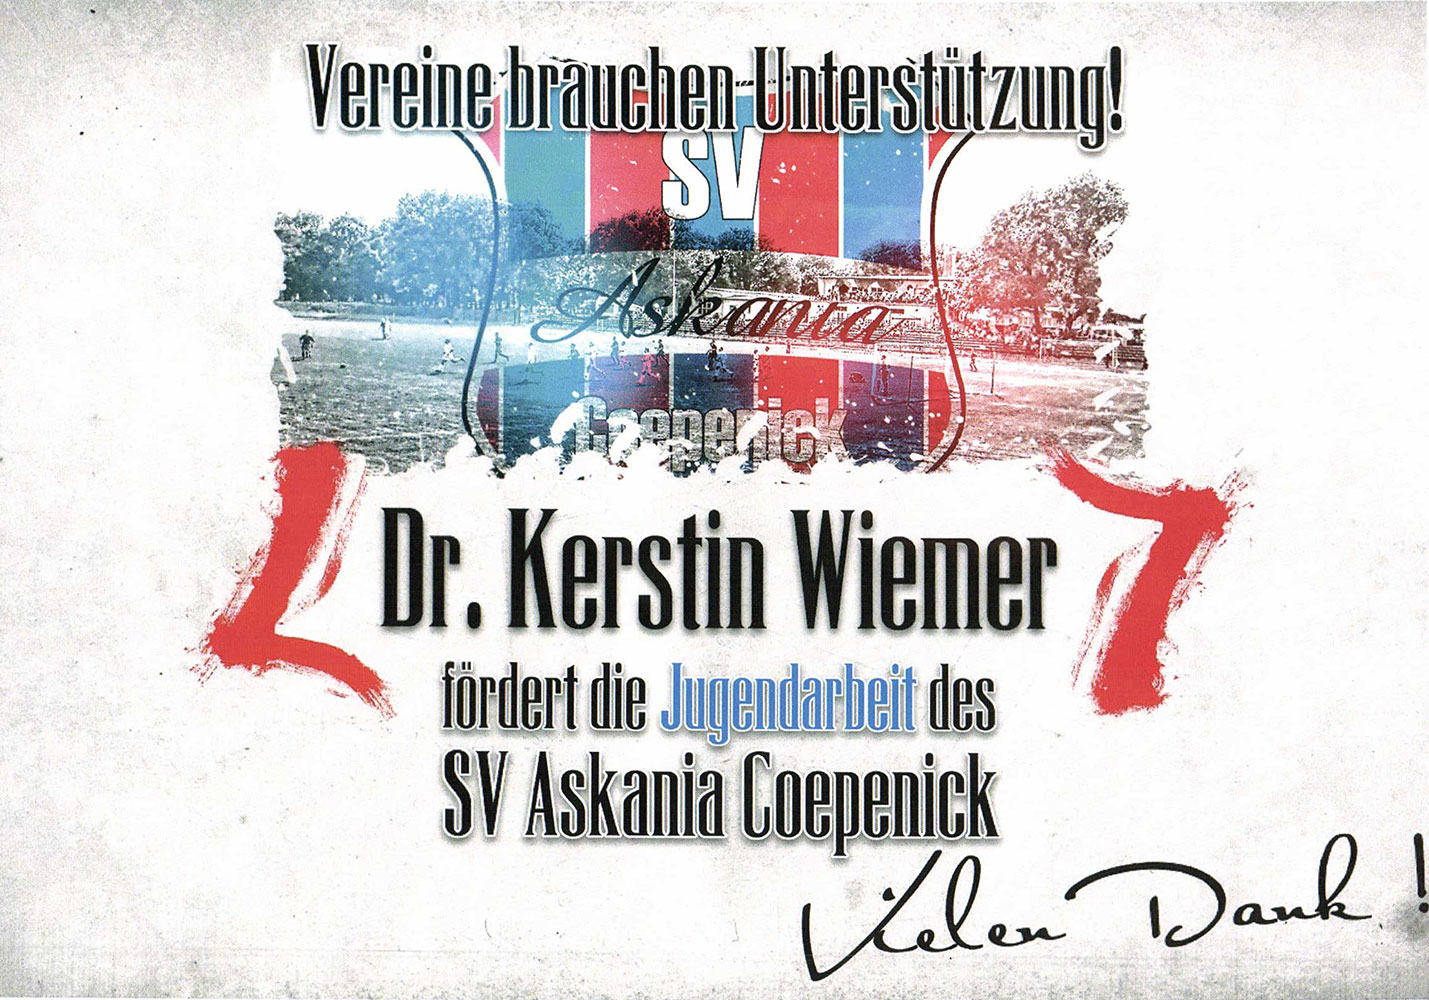 Dr. Kerstin Wiemer fördert die Jugendarbeit des SV Askania Coepenick